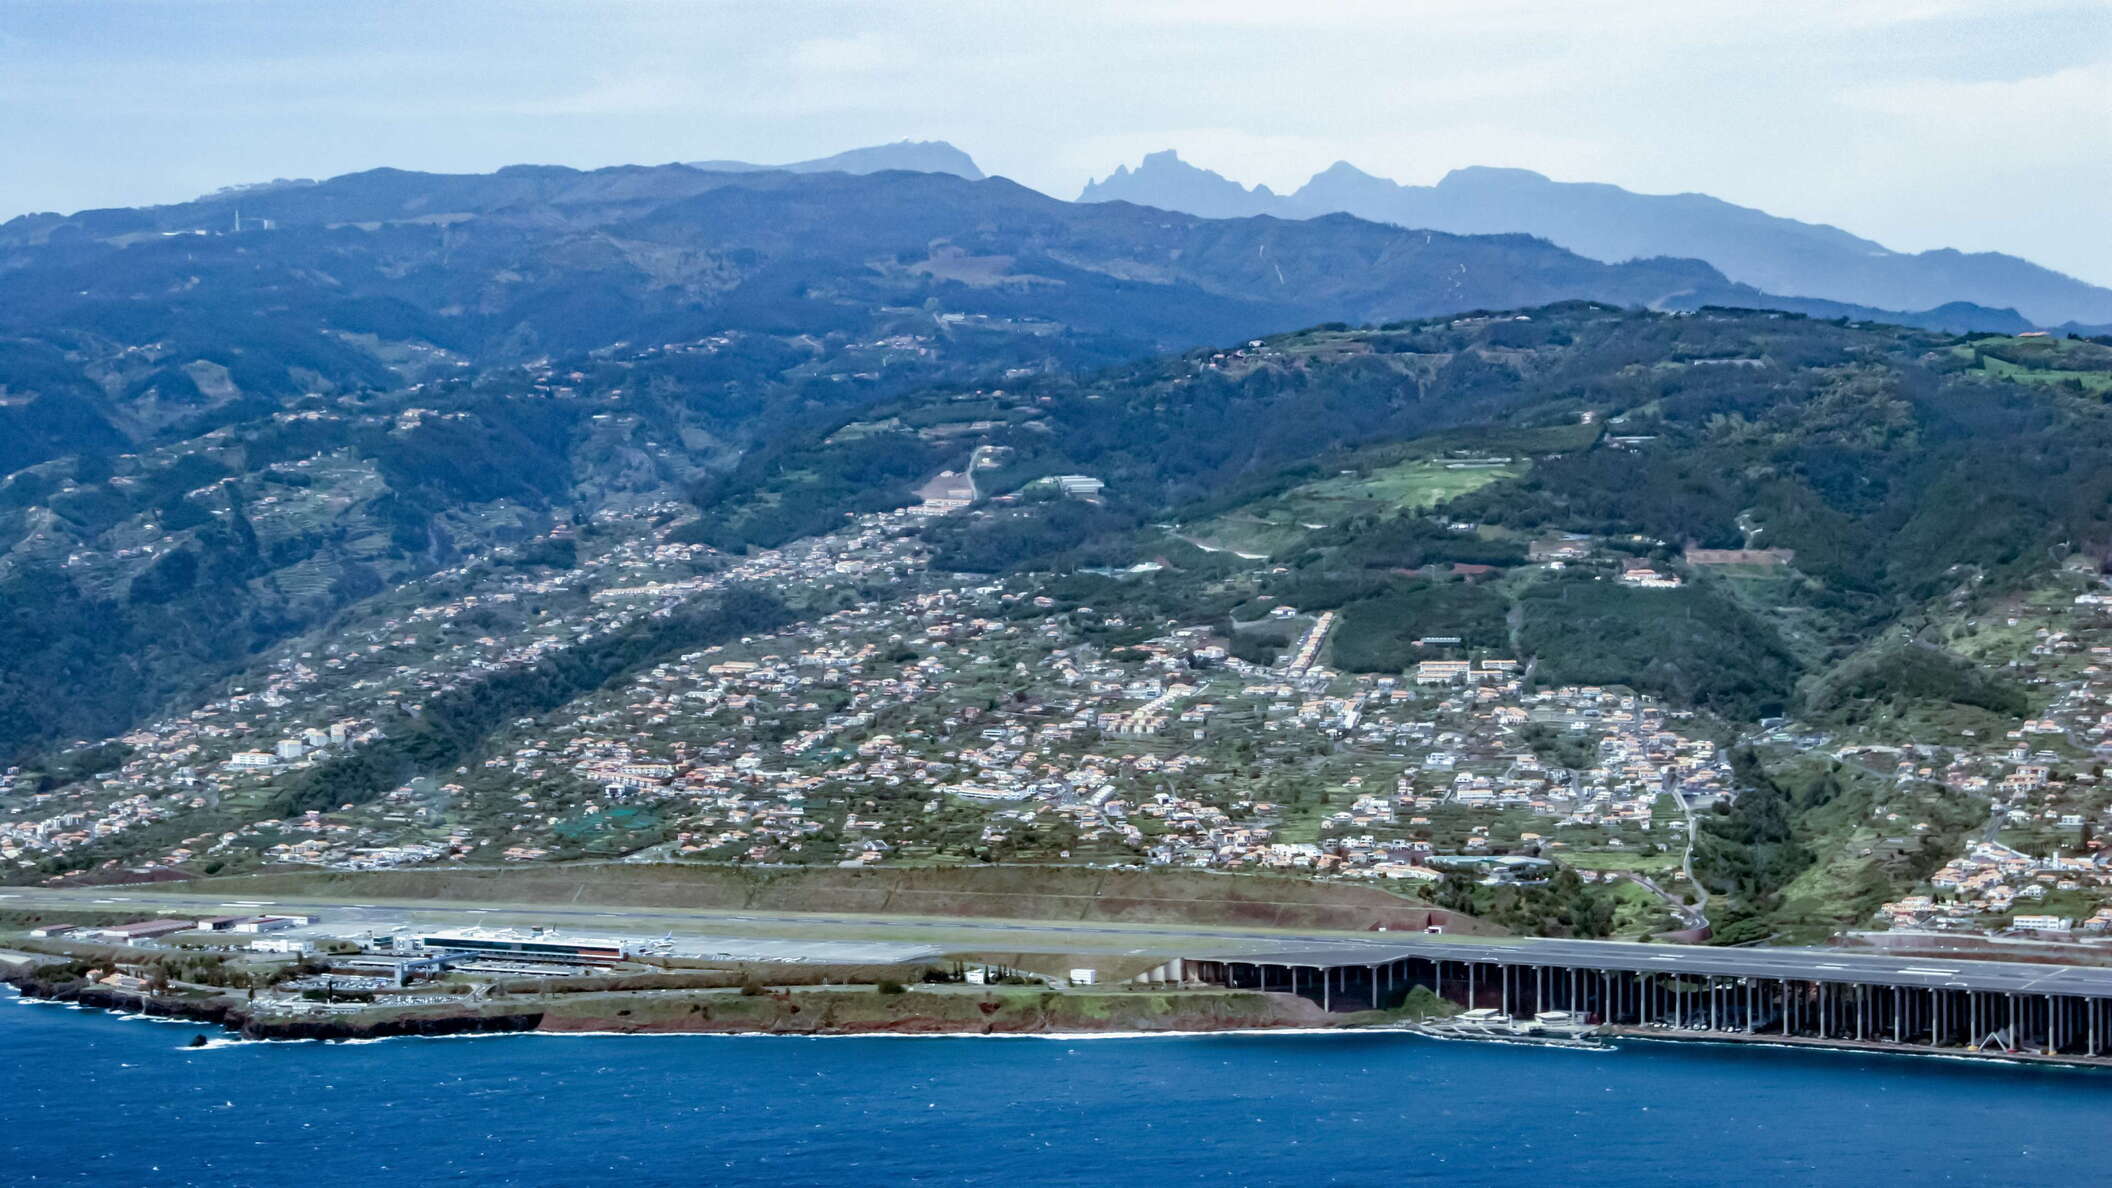 Aeroporto da Madeira and Maciço Montanhoso Central